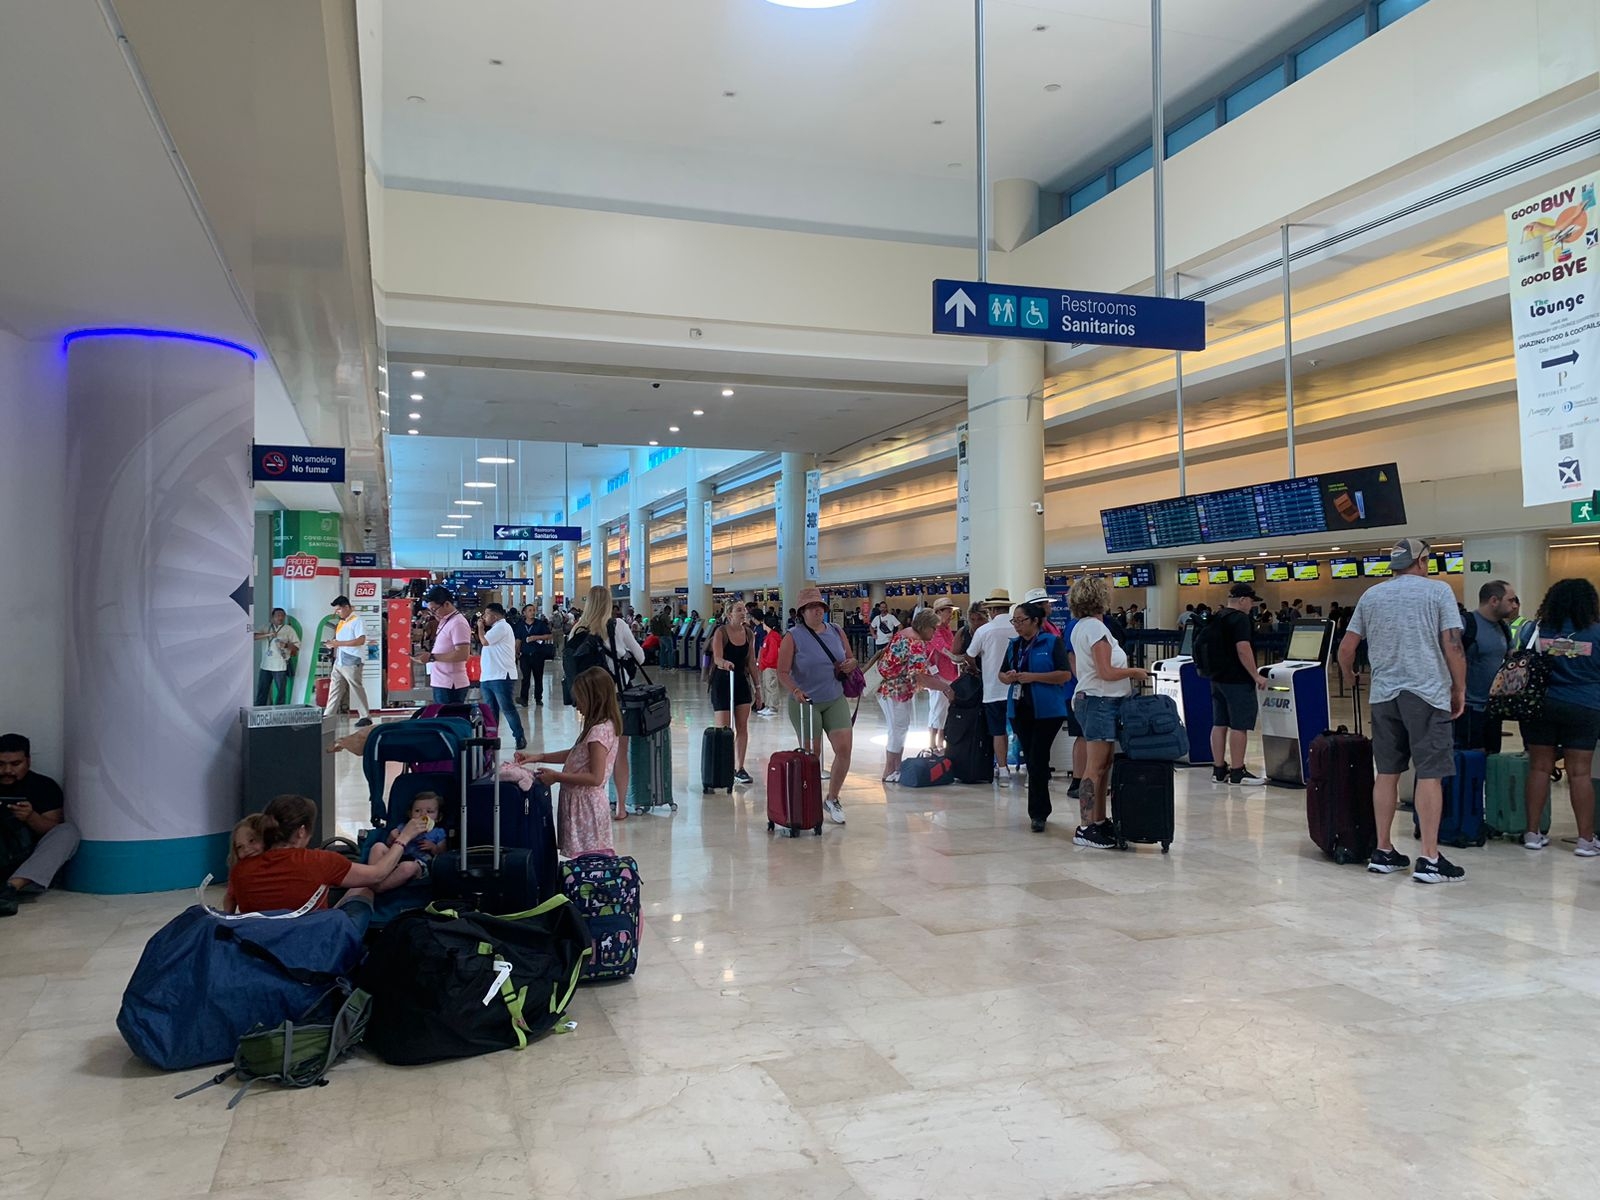 Son ocho vuelos retrasados en el aeropuerto de Cancún este sábado